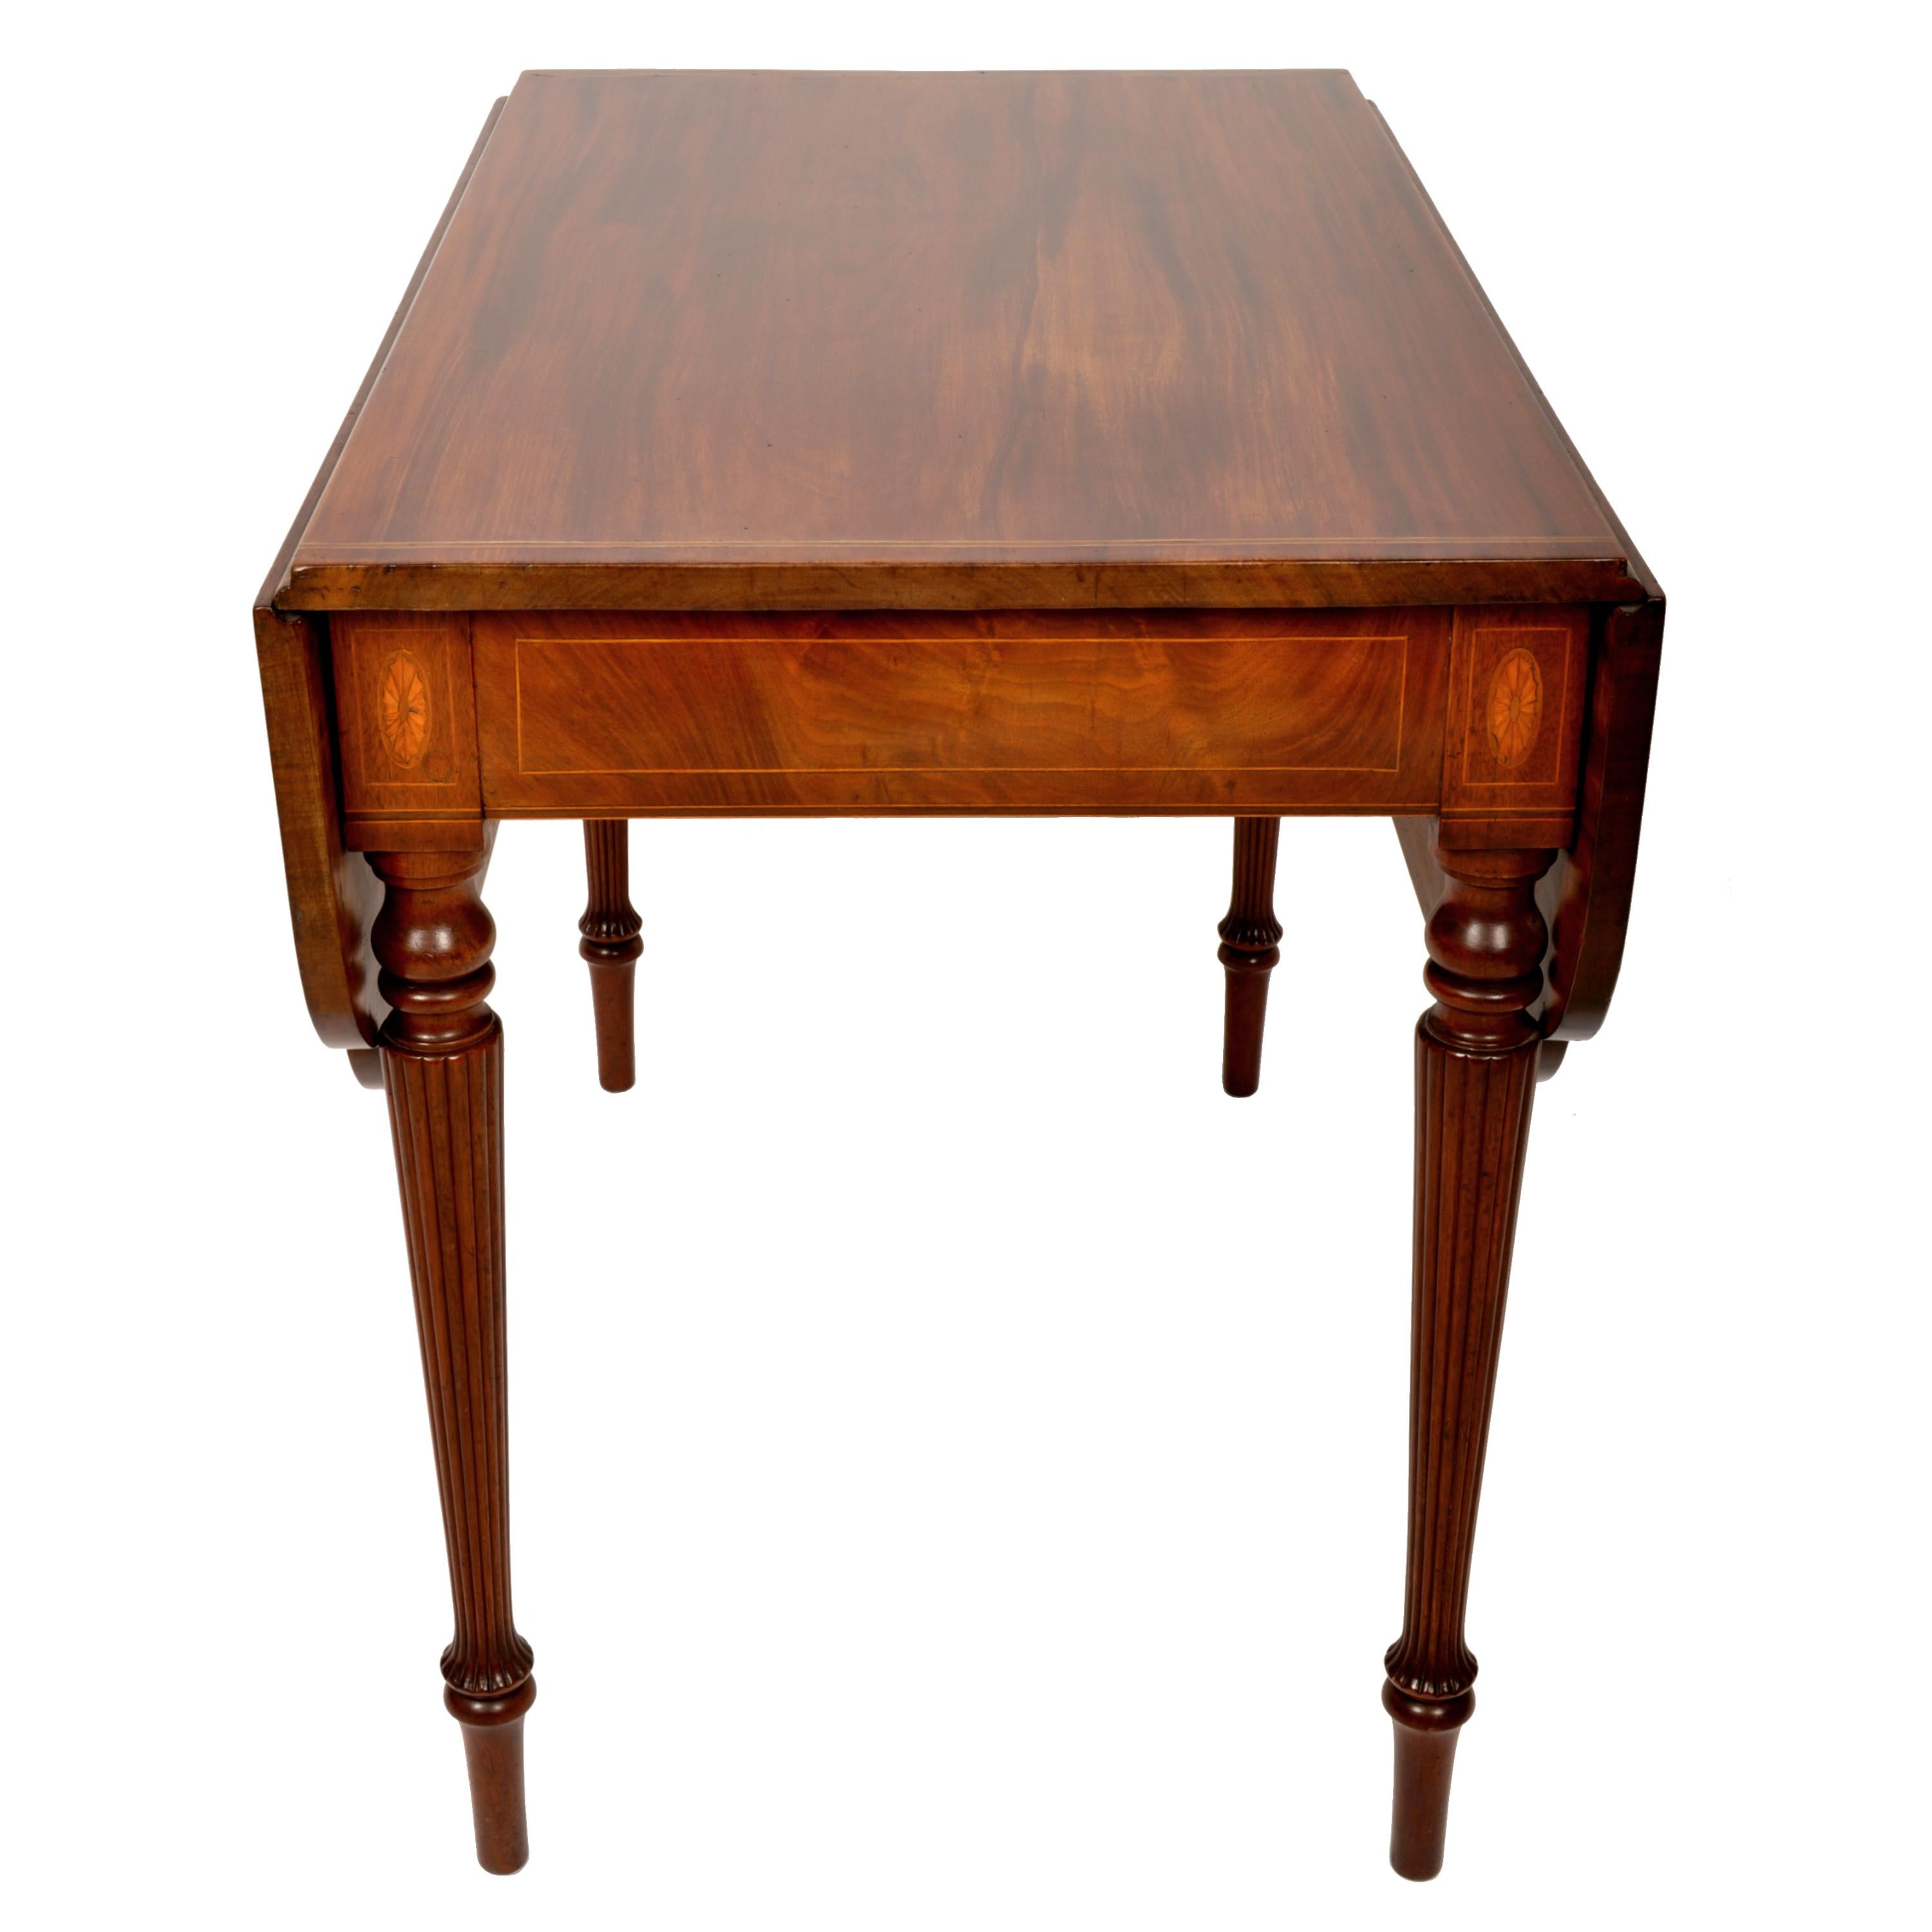 Très belle table Pembroke en acajou de la période fédérale de Sheraton, New York, vers 1790. 
Cette très élégante table d'époque fédérale est fabriquée dans le plus bel acajou cubain figuré. La table possède deux feuilles tombantes incrustées de